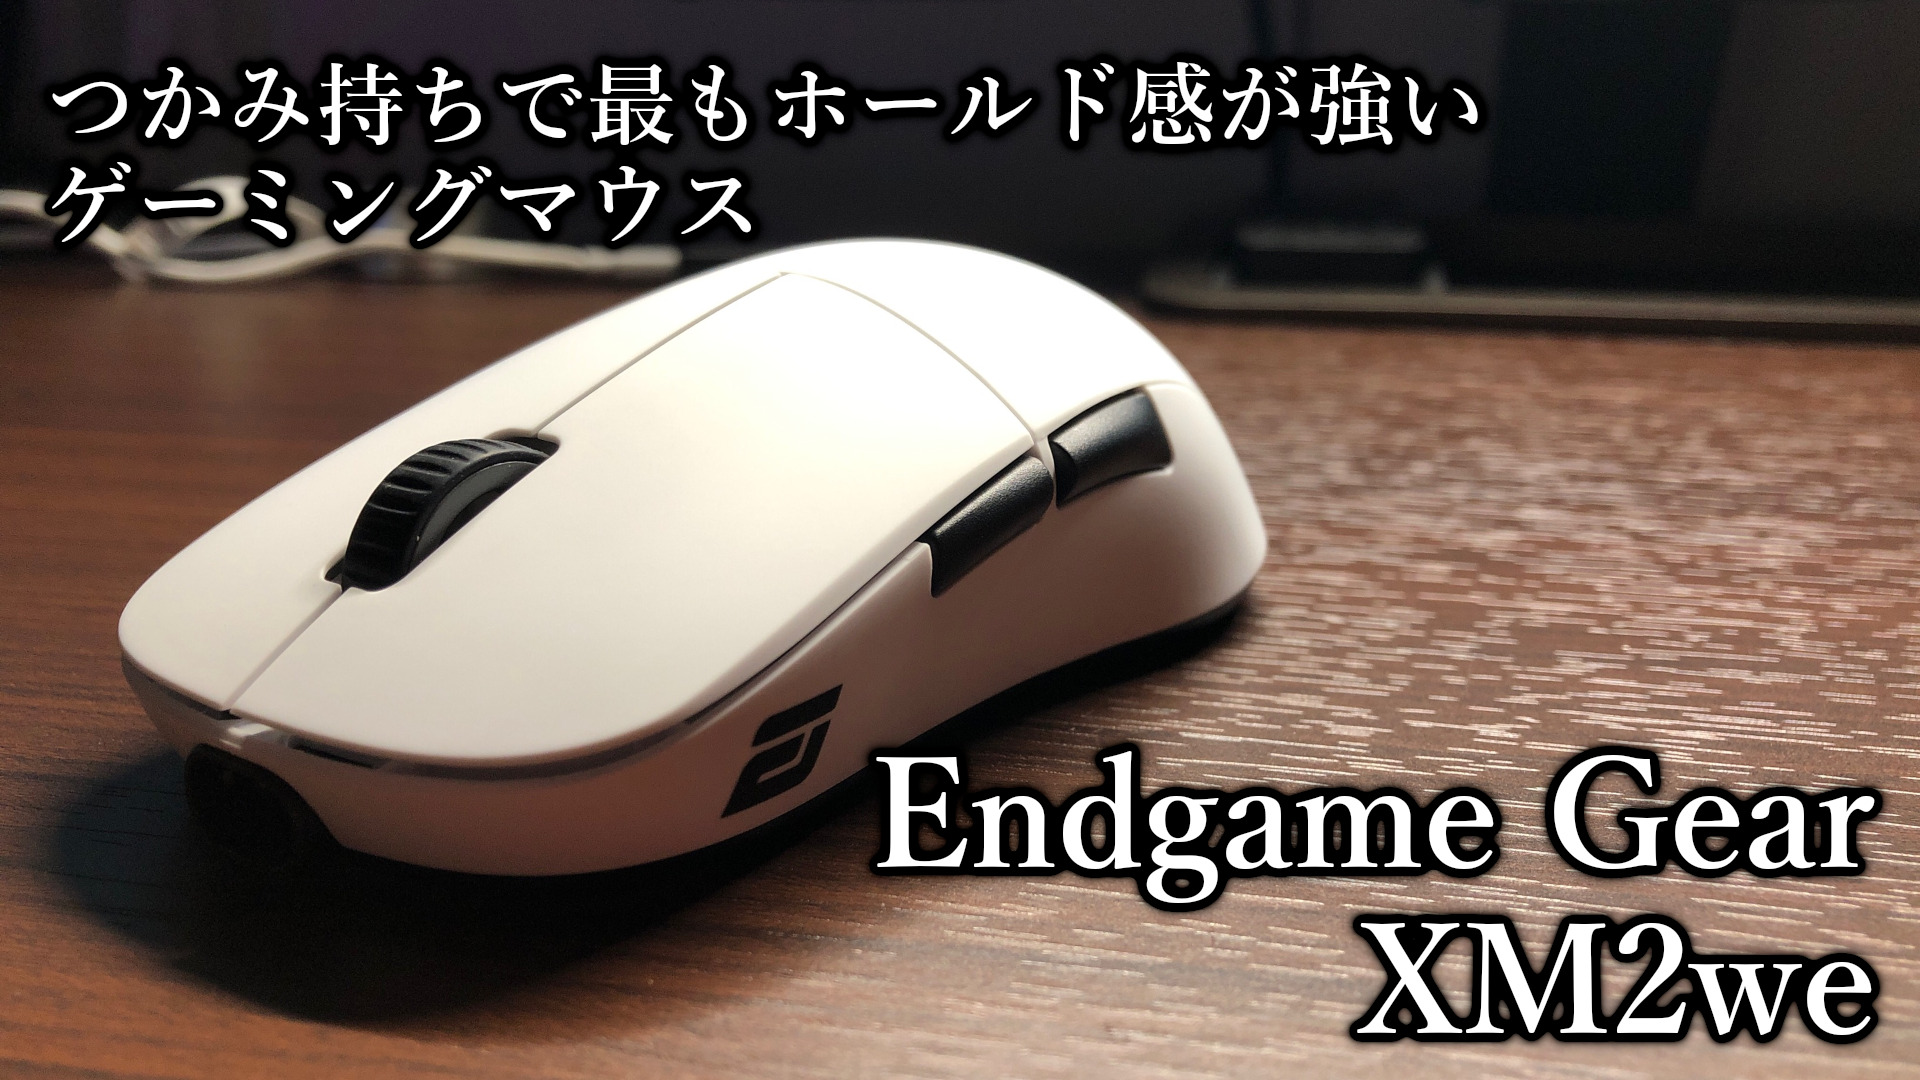 「Endgame Gear XM2we」レビュー